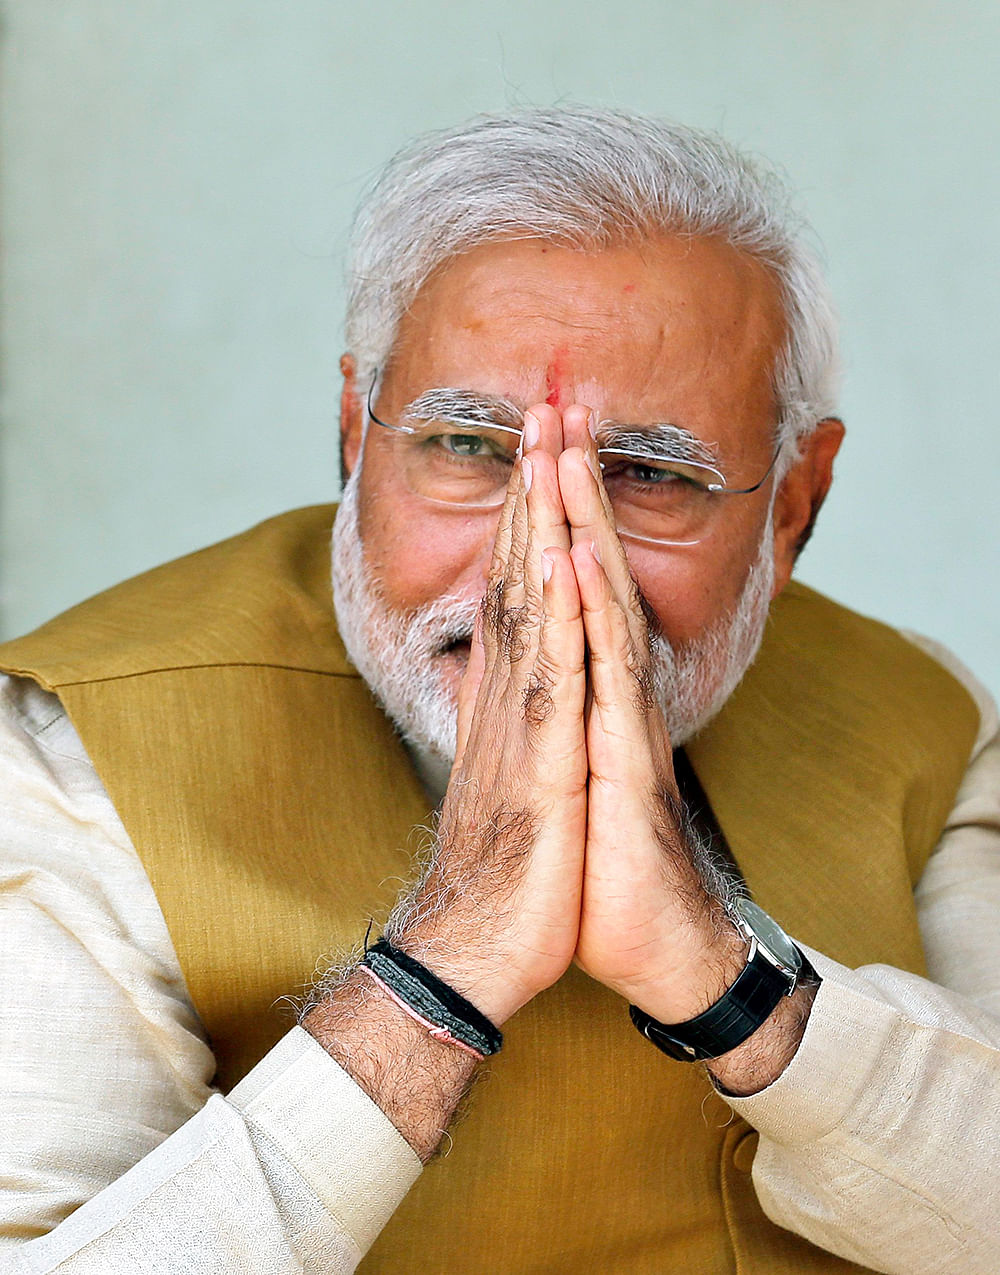 Narendra Modi. Photo: Reuters